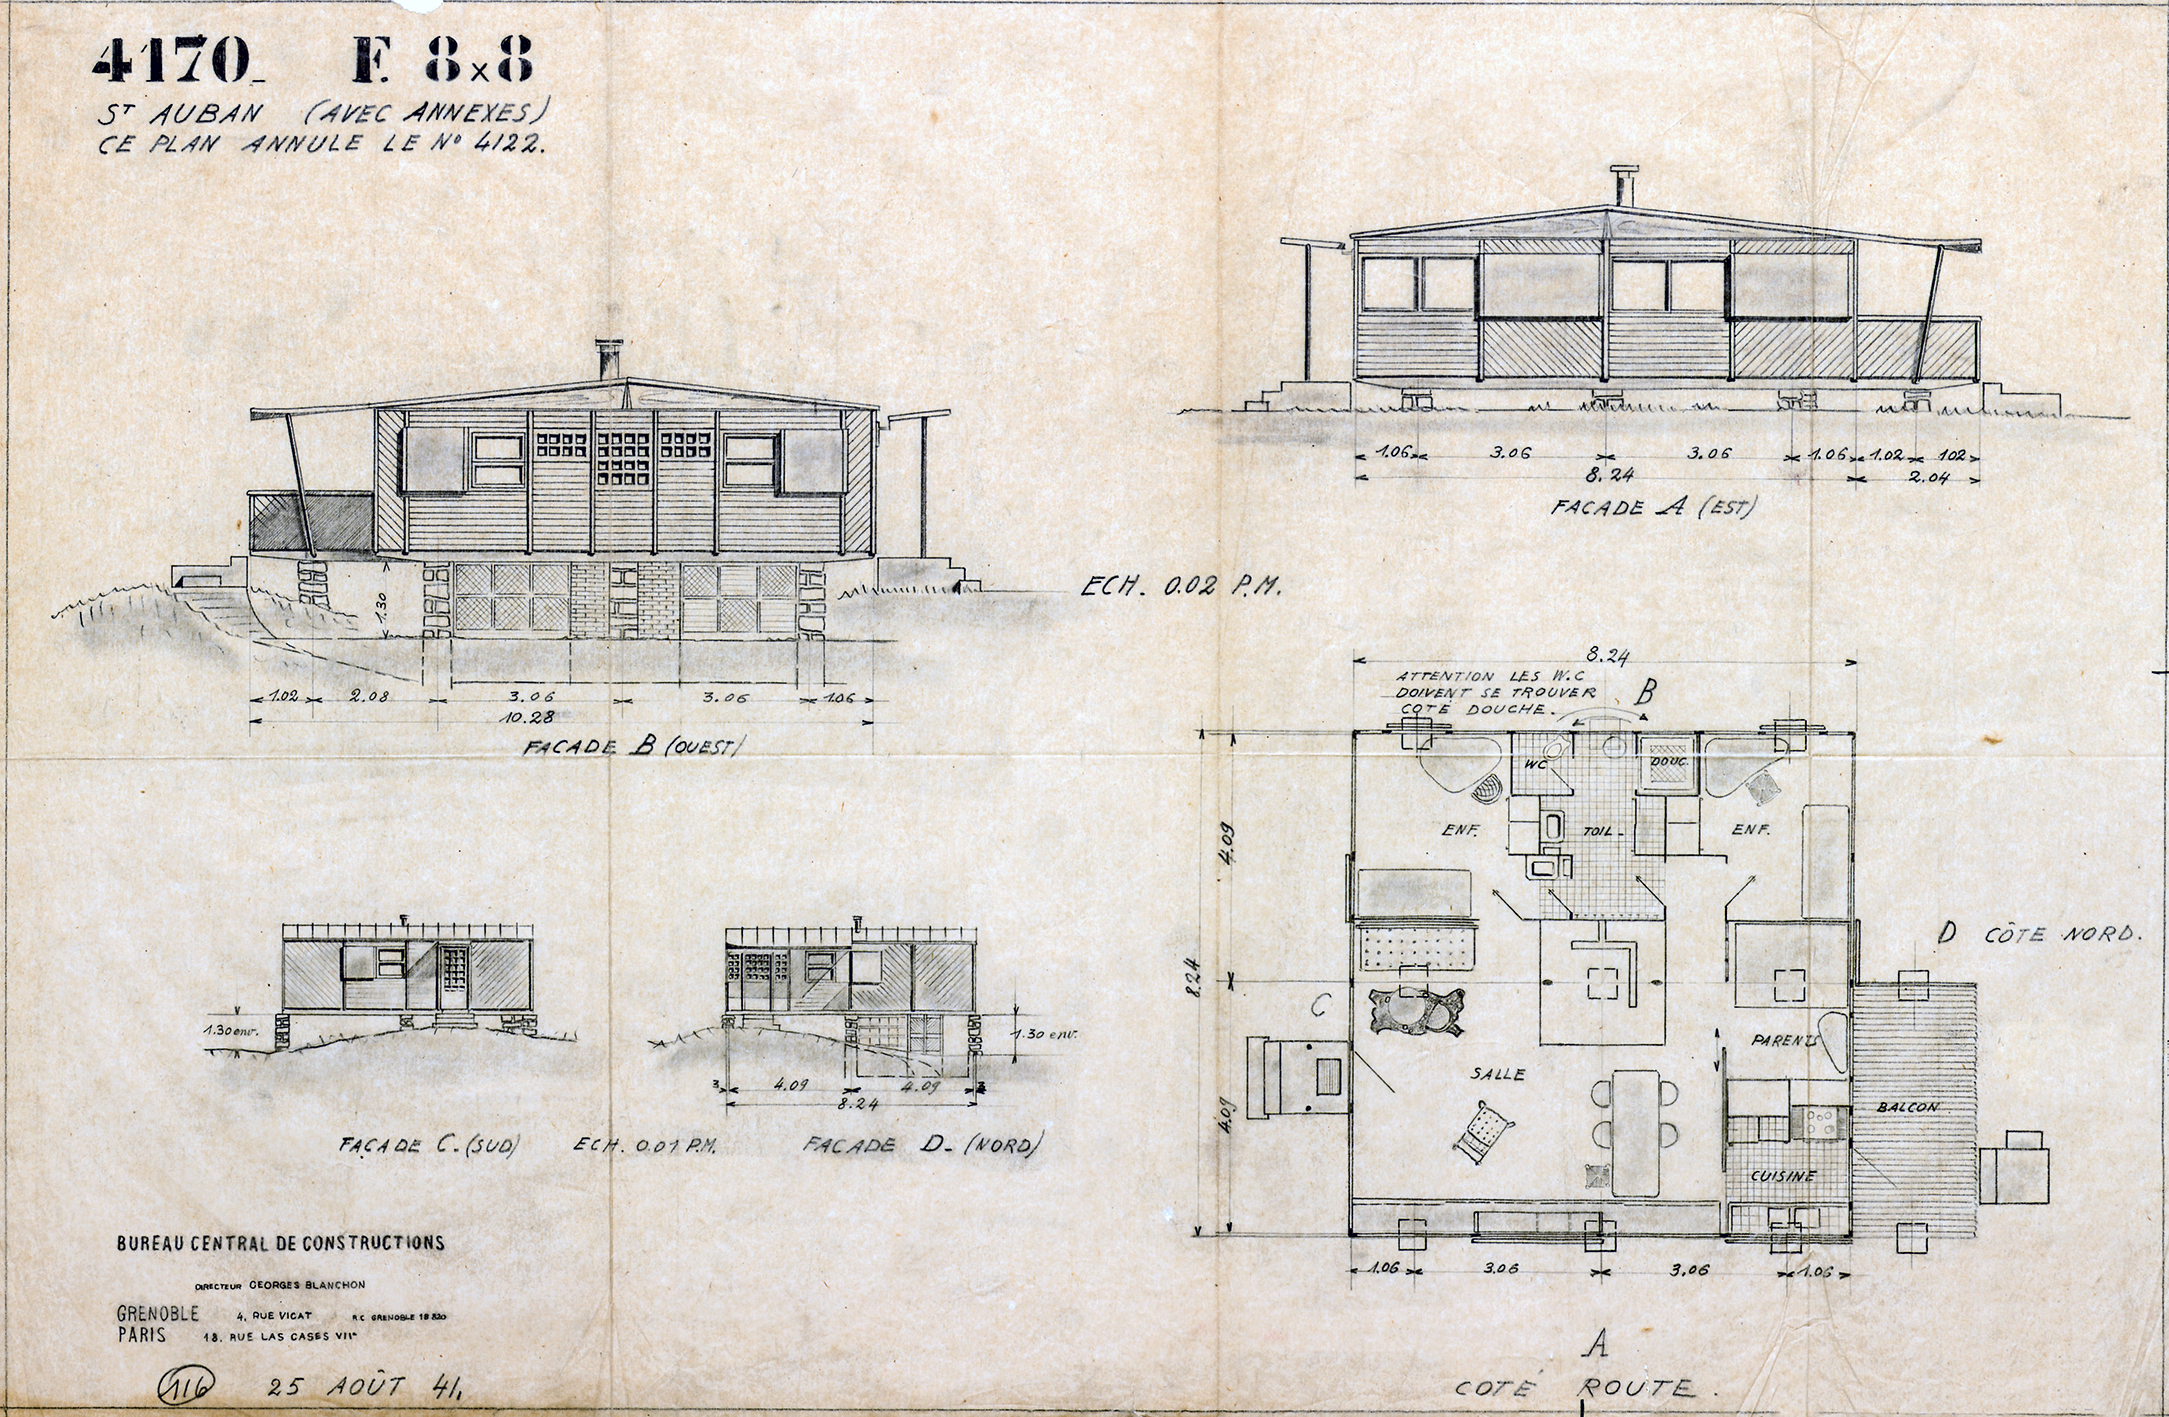 Bureau Central de Constructions. “F 8x8 St Auban (with annexes)”. Plan no. 4170, 25 August 1941.